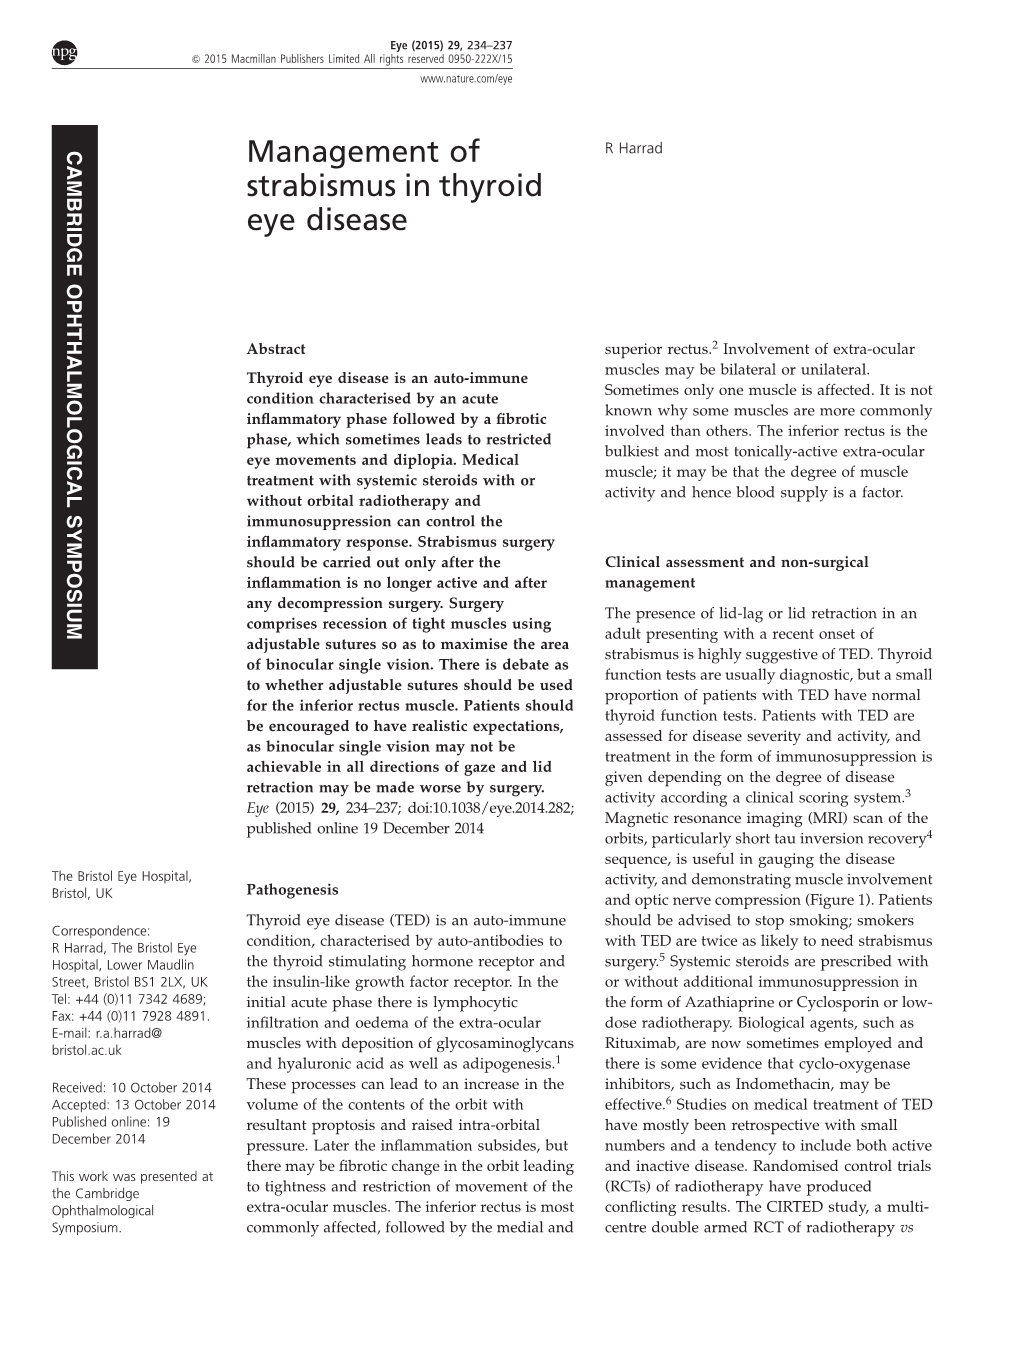 Management of Strabismus in Thyroid Eye Disease